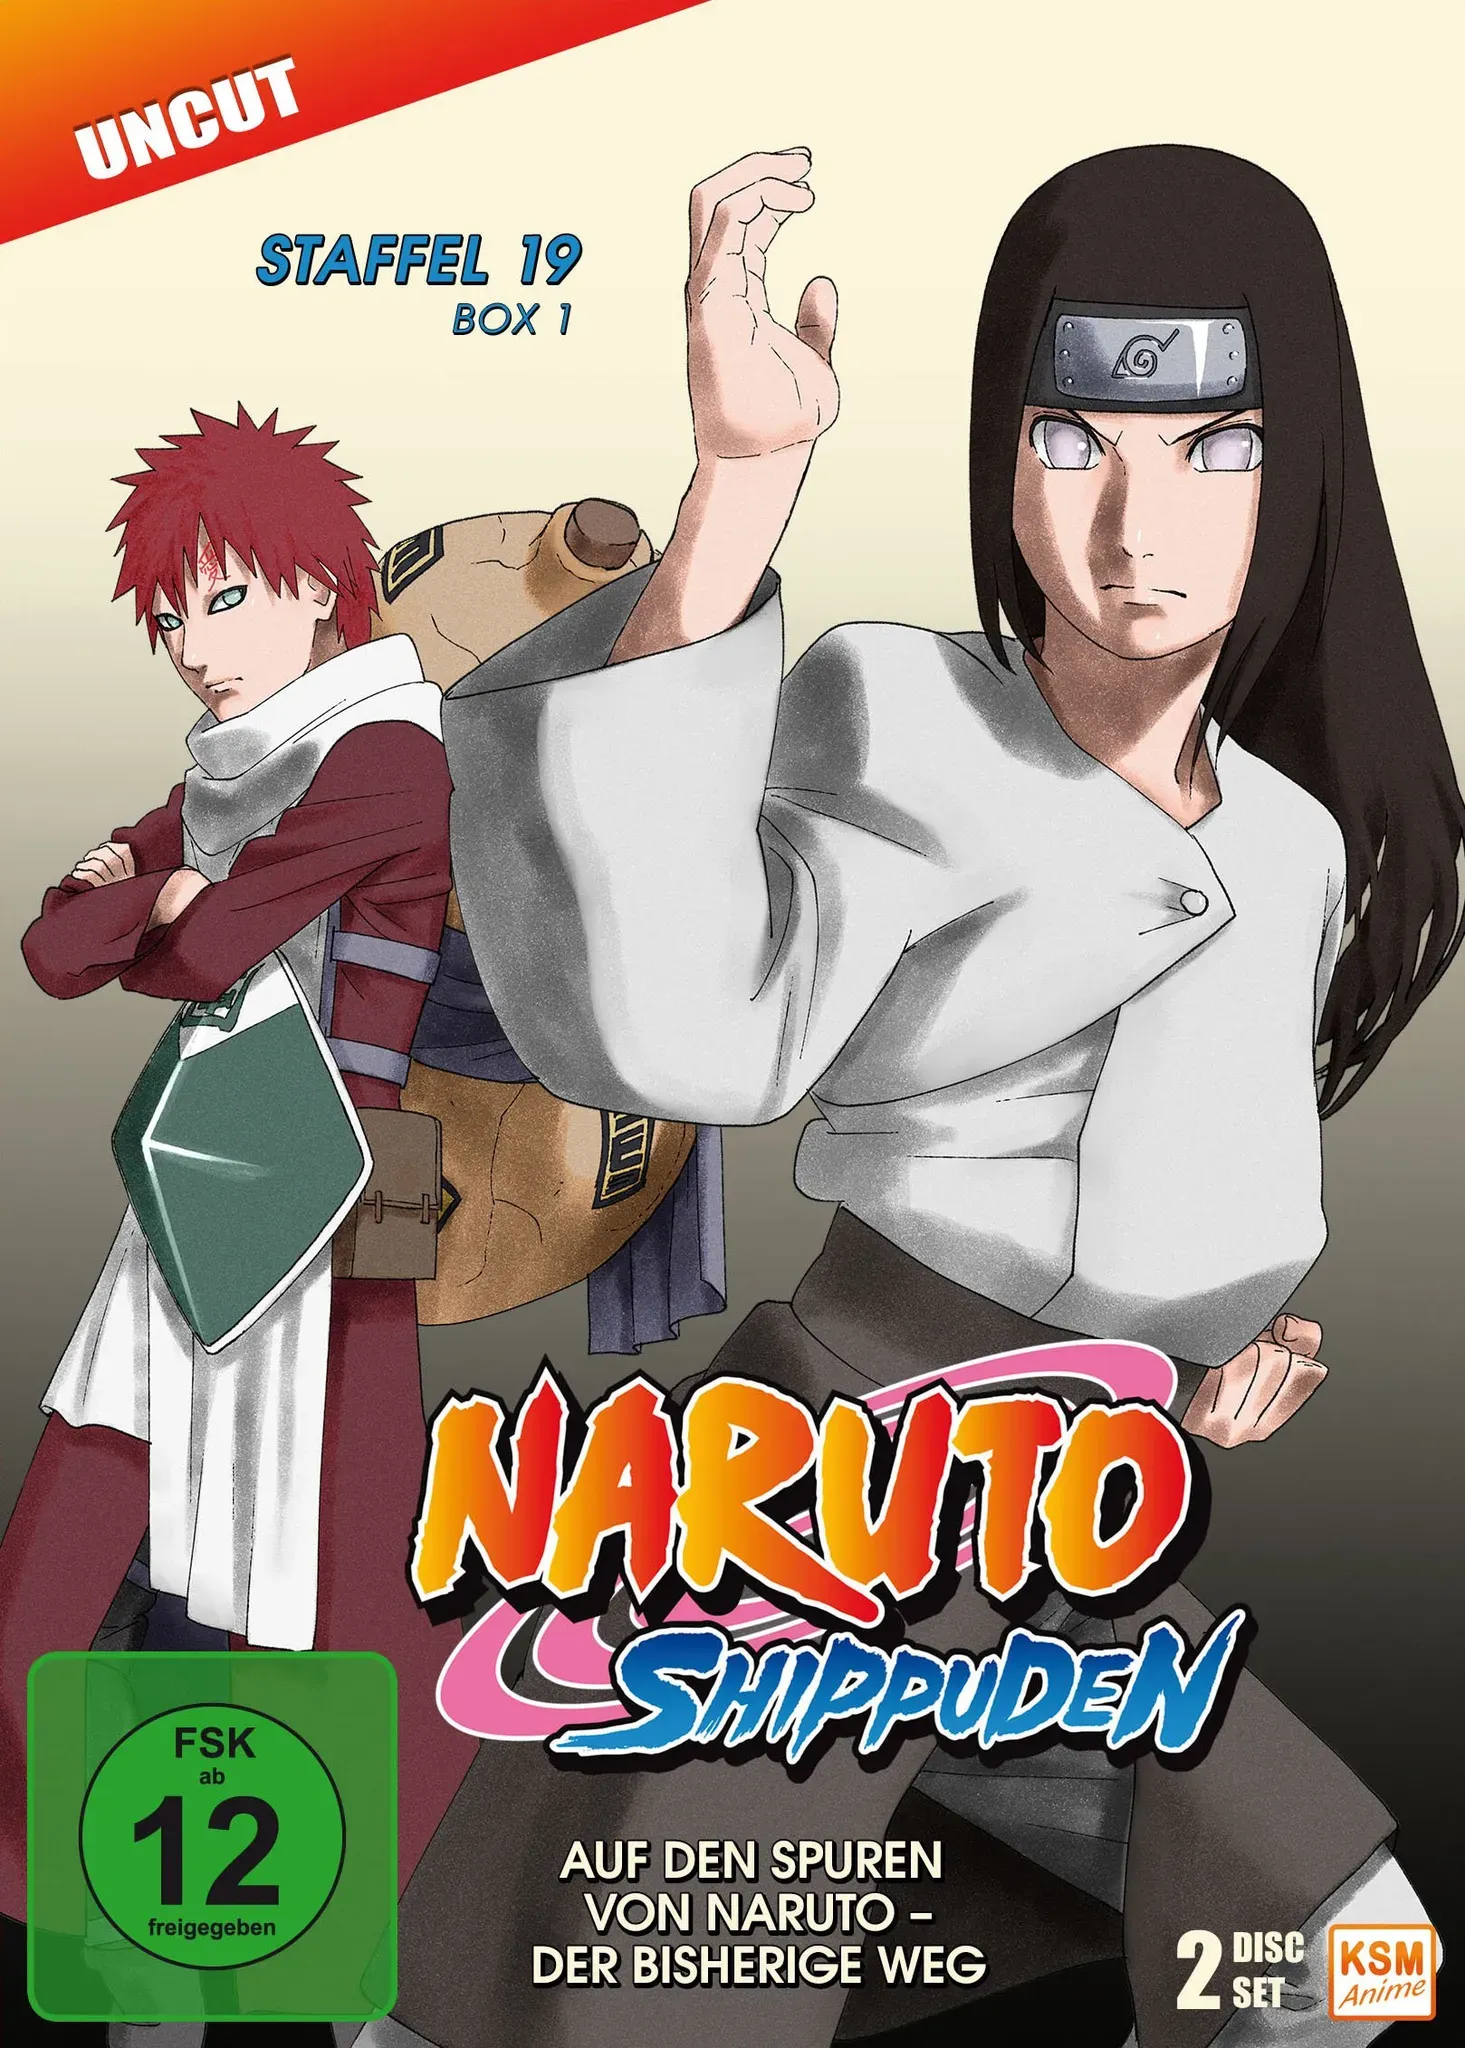 Naruto Shippuden - Auf den Spuren von Naruto - Der bisherige Weg - Staffel 19.1: Episode 614-623 [3 DVDs] (Neu differenzbesteuert)